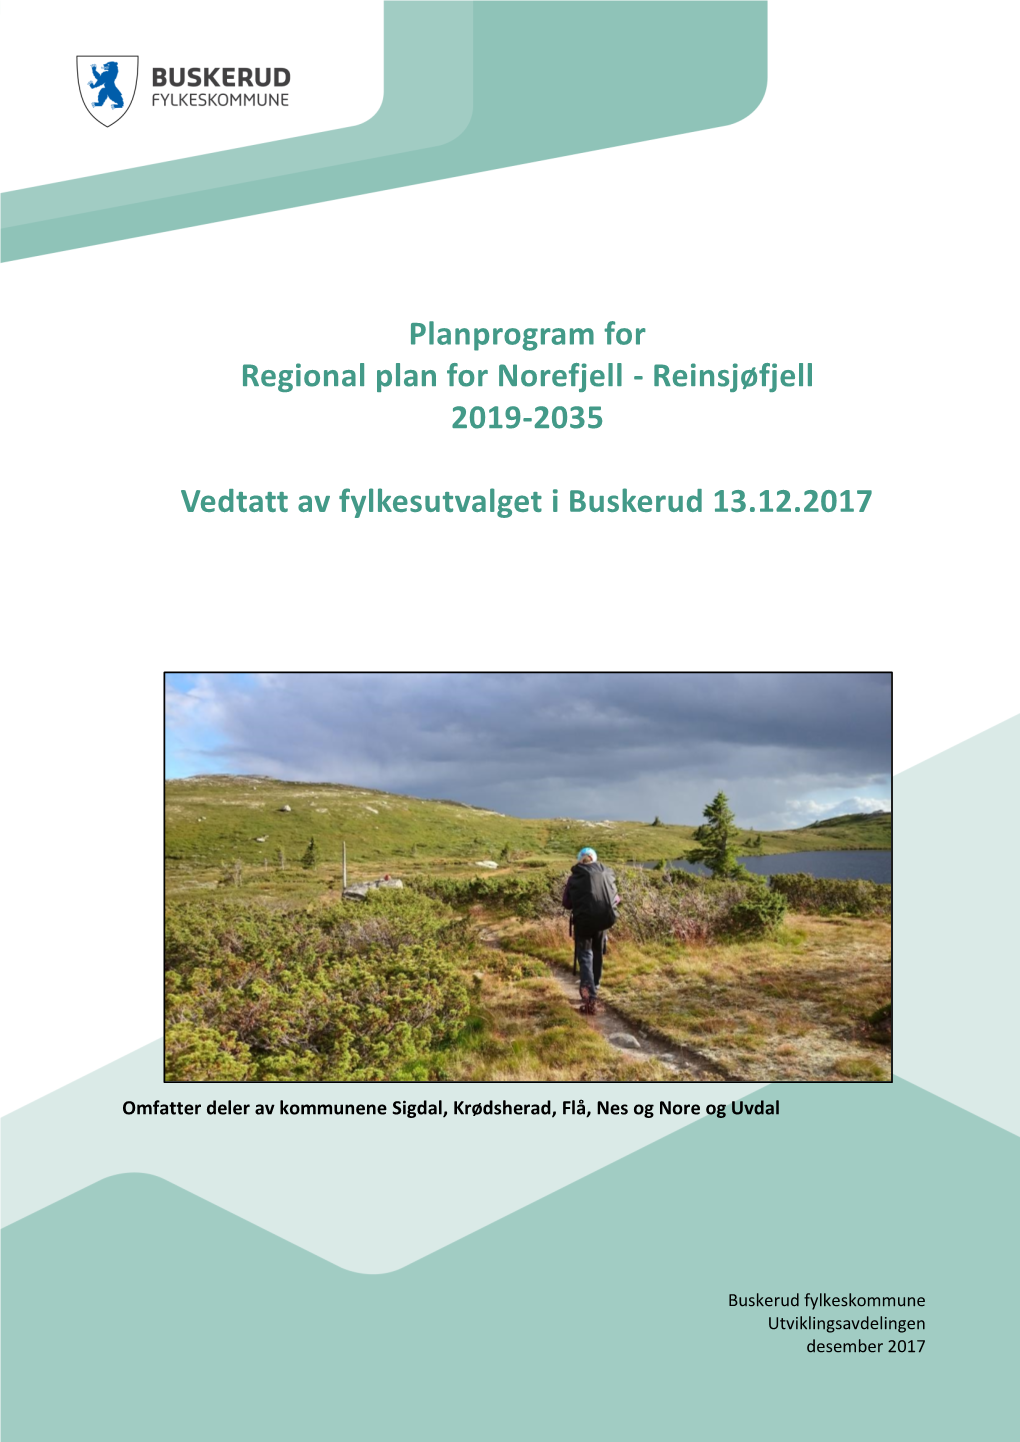 Planprogram for Regional Plan for Norefjell - Reinsjøfjell 2019-2035